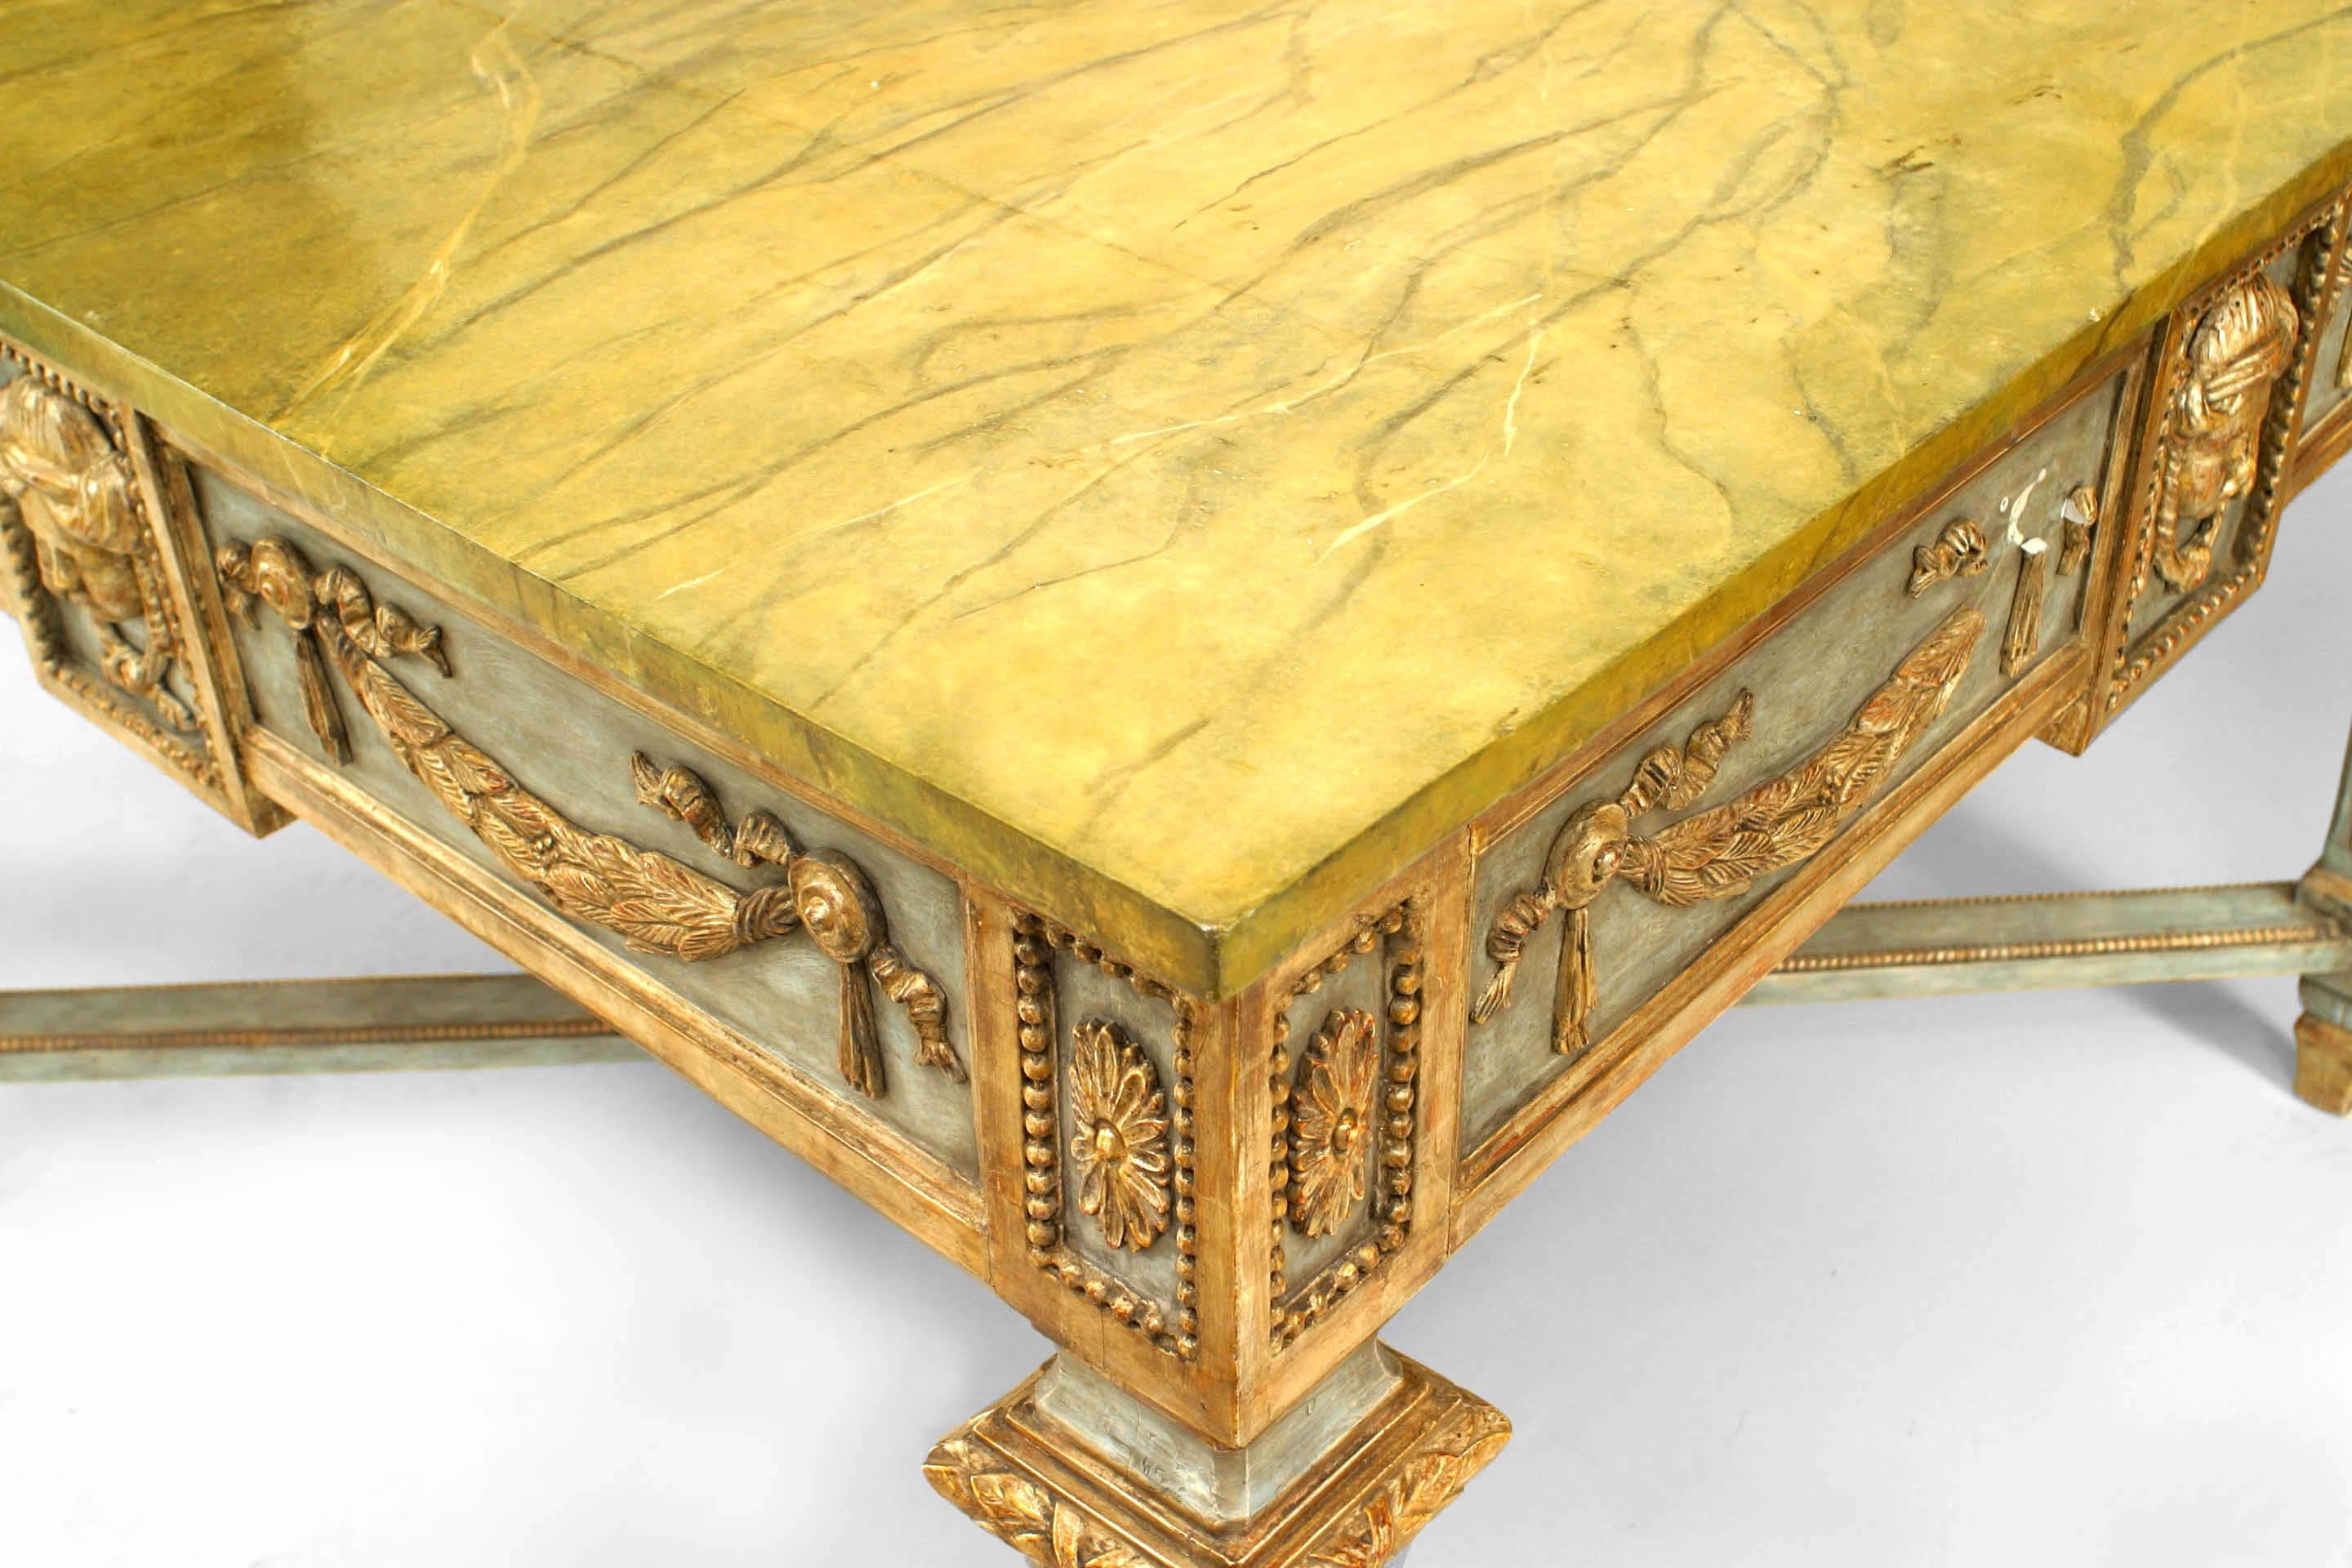 Table centrale carrée néo-classique (fin du 18ème siècle) en argent doré et peinture bleue avec des guirlandes et des masques sur le tablier, sur des pieds carrés fuselés avec un brancard et un plateau en faux marbre peint.
